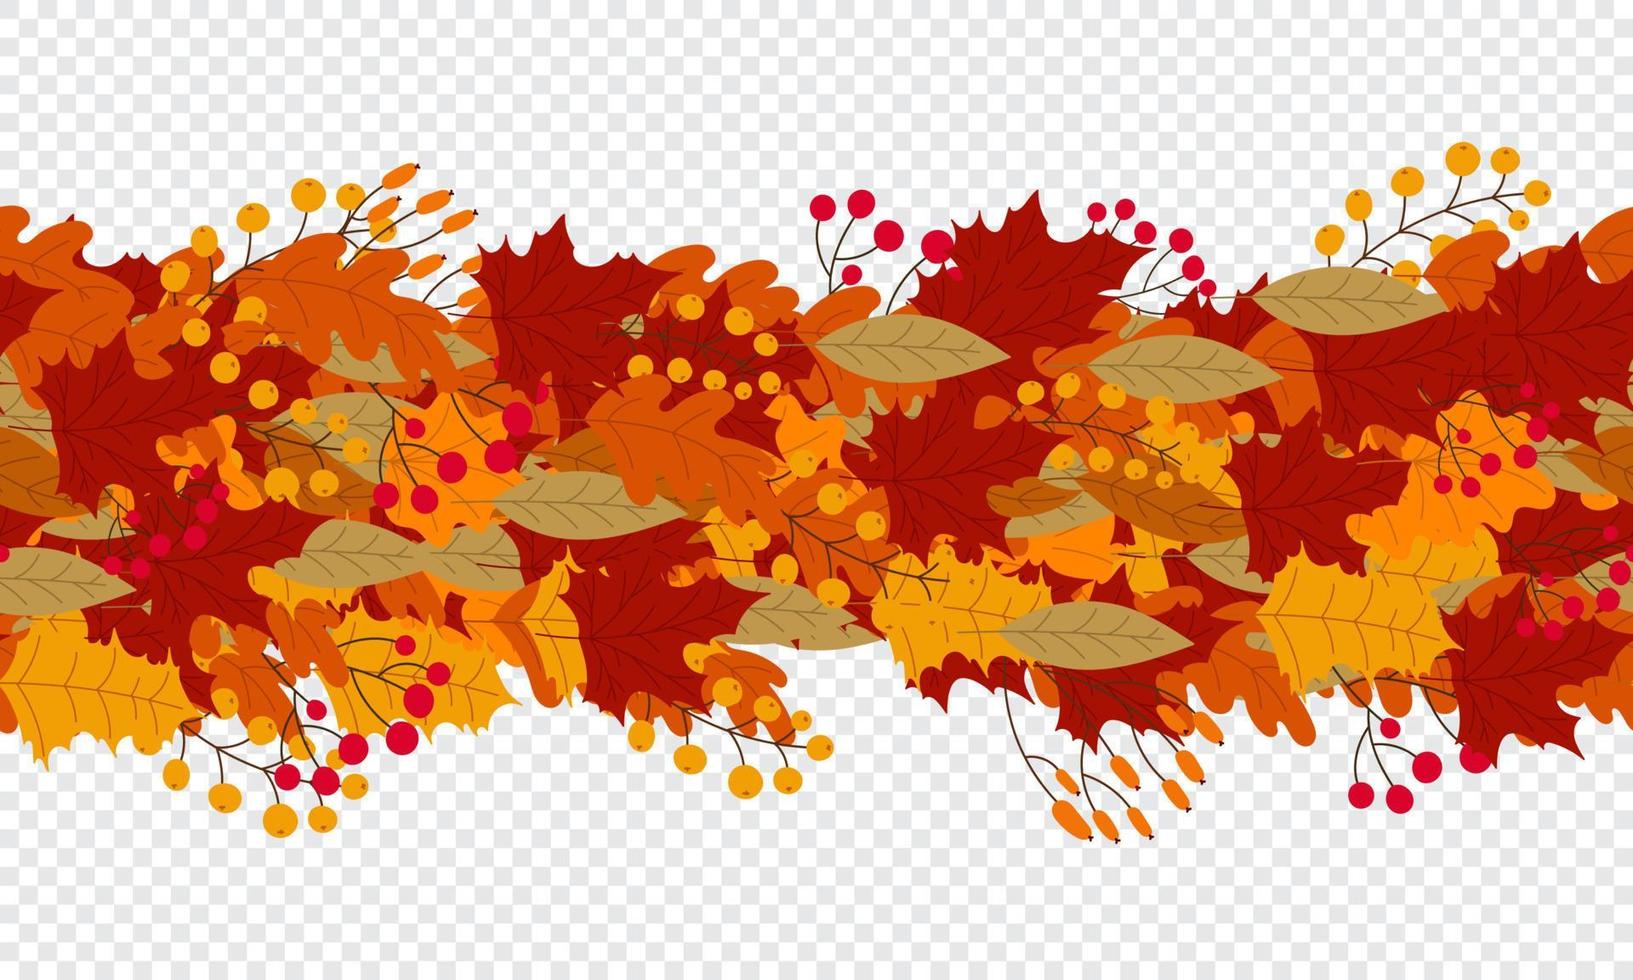 Hintergrund stilisierter Herbstblätter für Grußkarten. Nahtloses horizontales Banner mit bunten Herbstpflanzen. handgemalt. Vektor-Illustration vektor